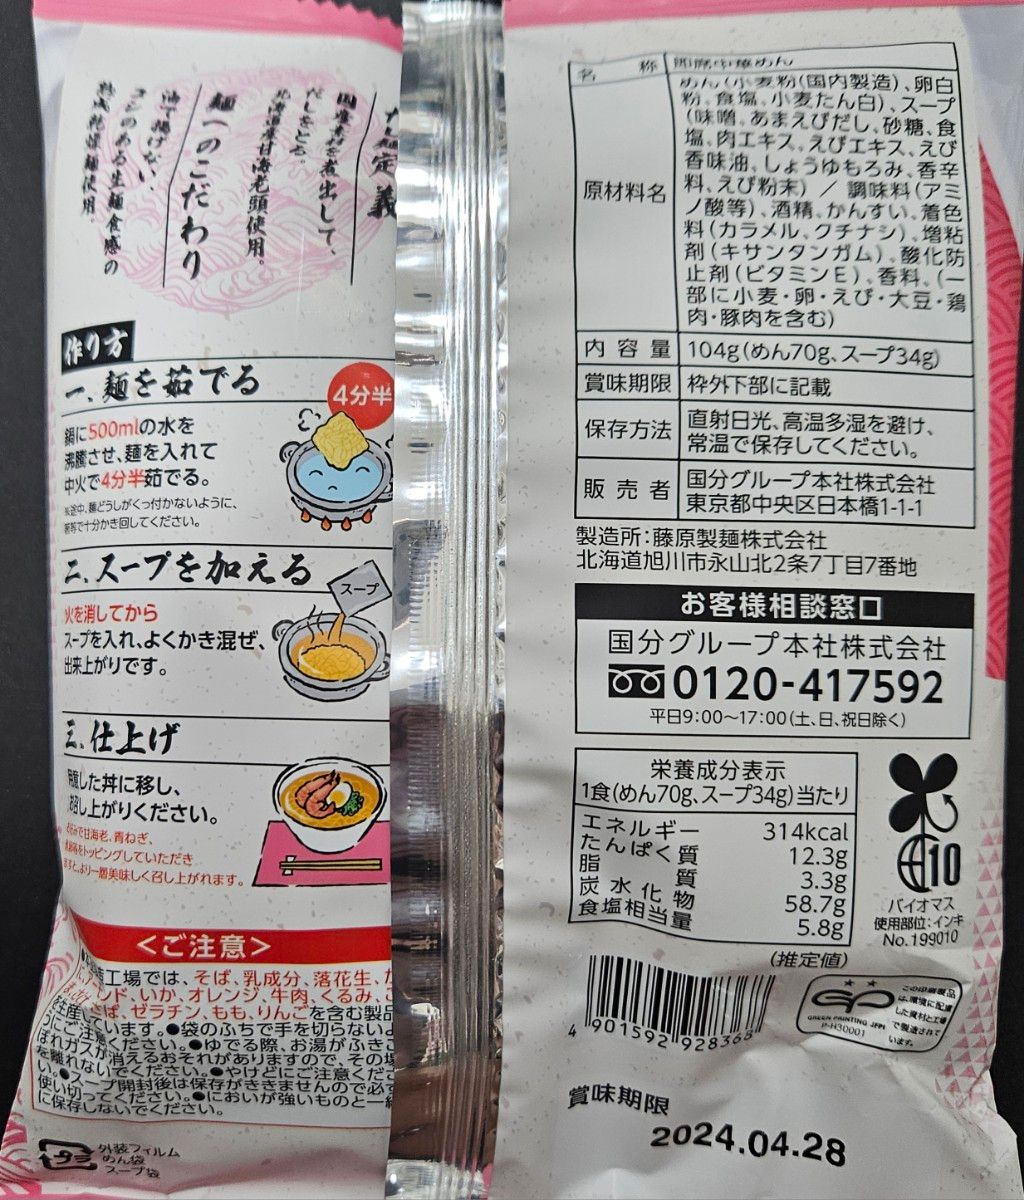  【だし麺】北海道産 甘海老だし 味噌ラーメン   高知県産 柚子だし 塩ラーメン  セット